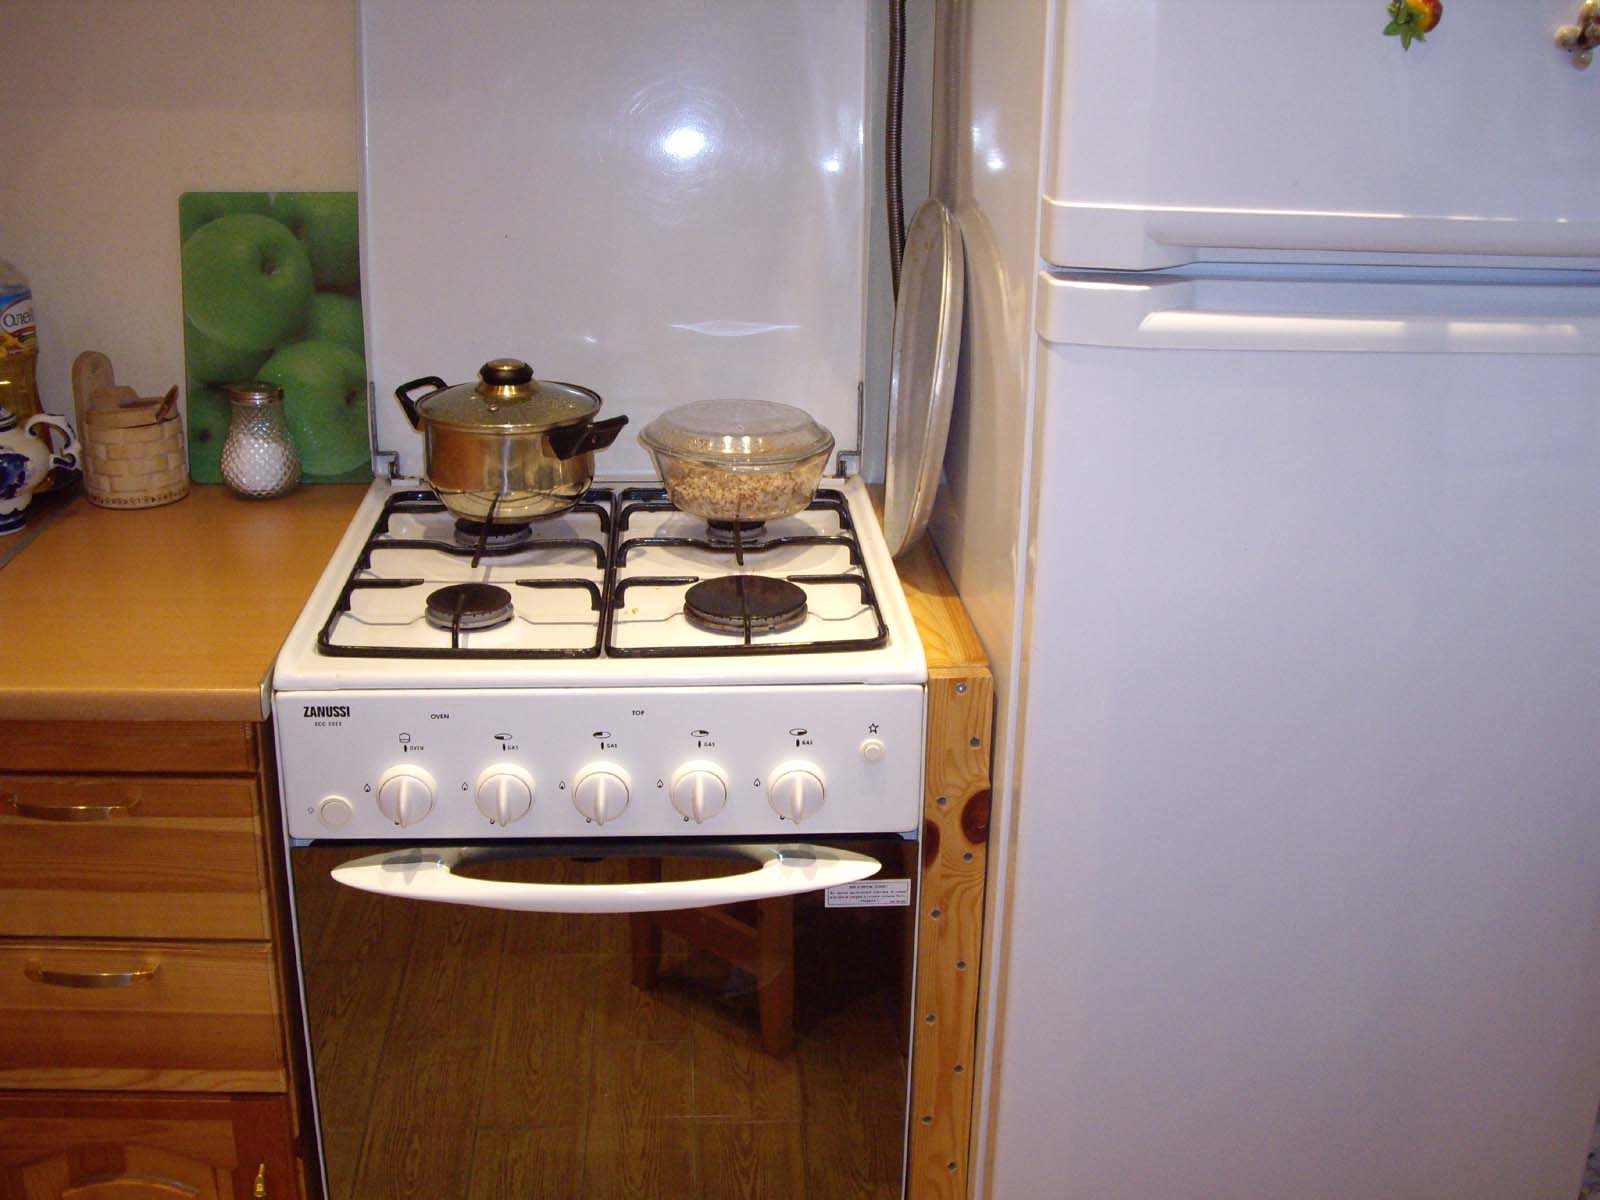 Можно ли холодильник и газовую плиту поставить рядом? требования к минимальным расстояниям между техникой